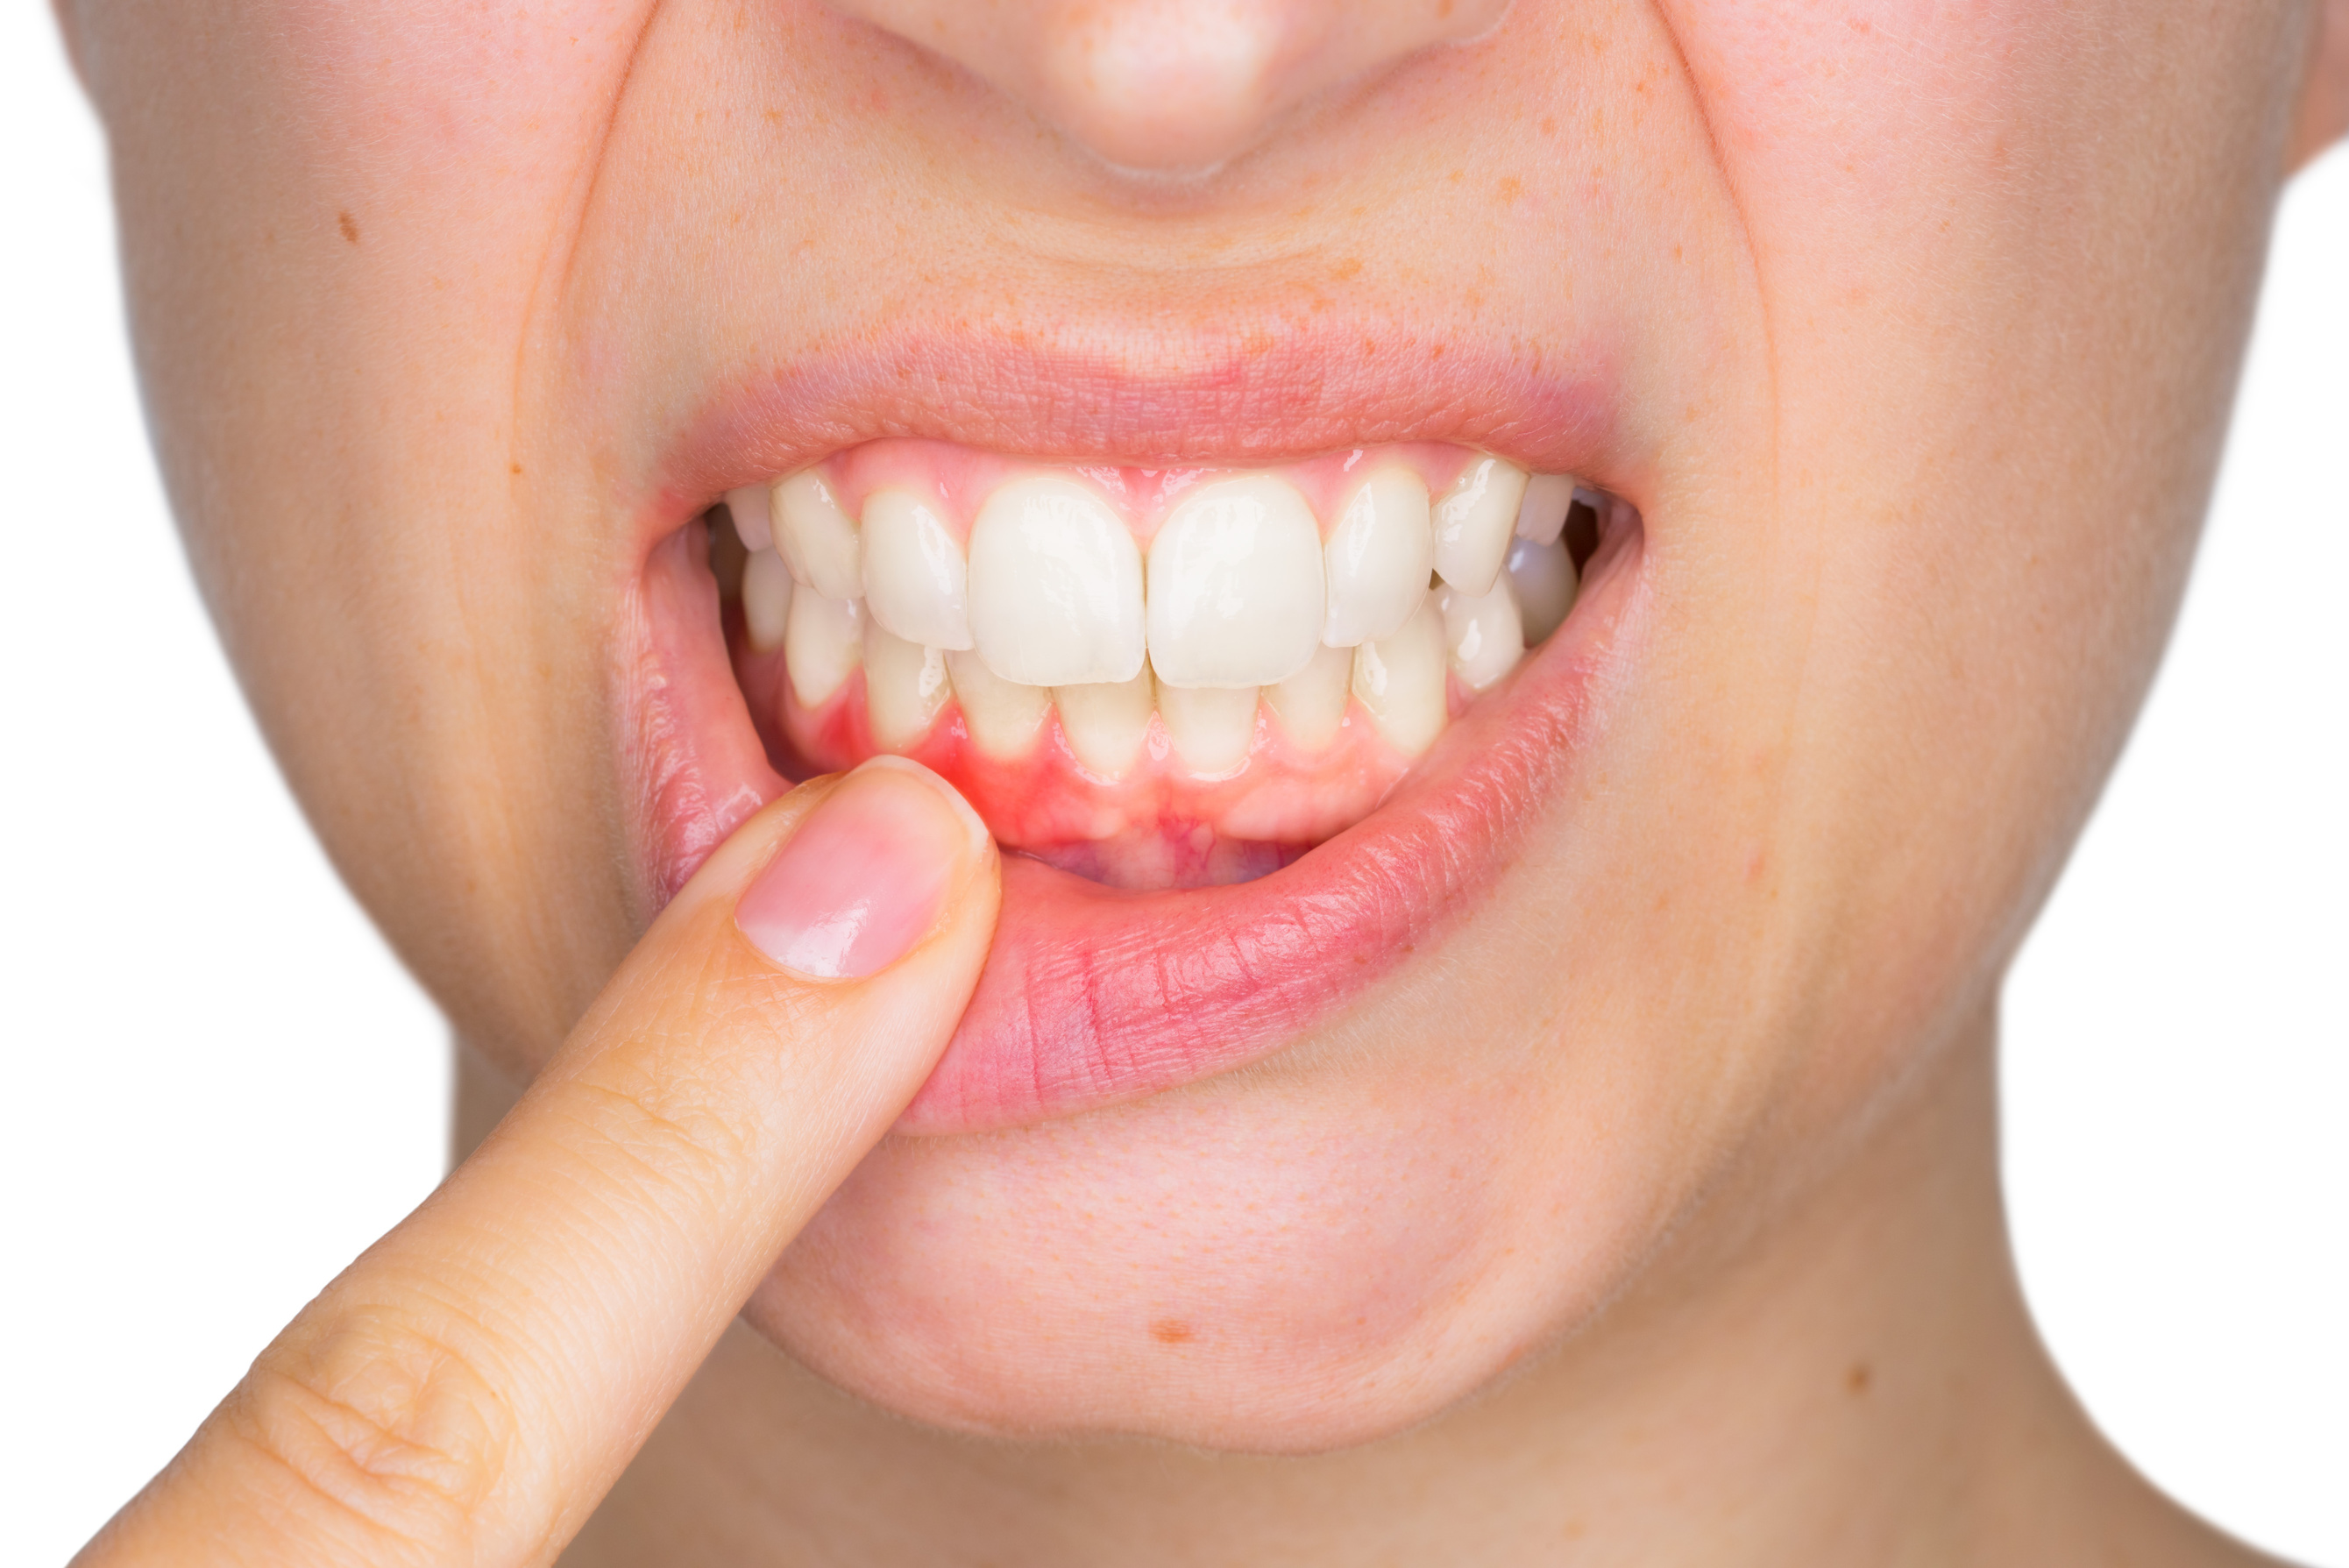 المعهد الذهبي|نصائح مفيدة لمتاعب الأسنان واللثةنصائح مفيدة لمتاعب الأسنان واللثة